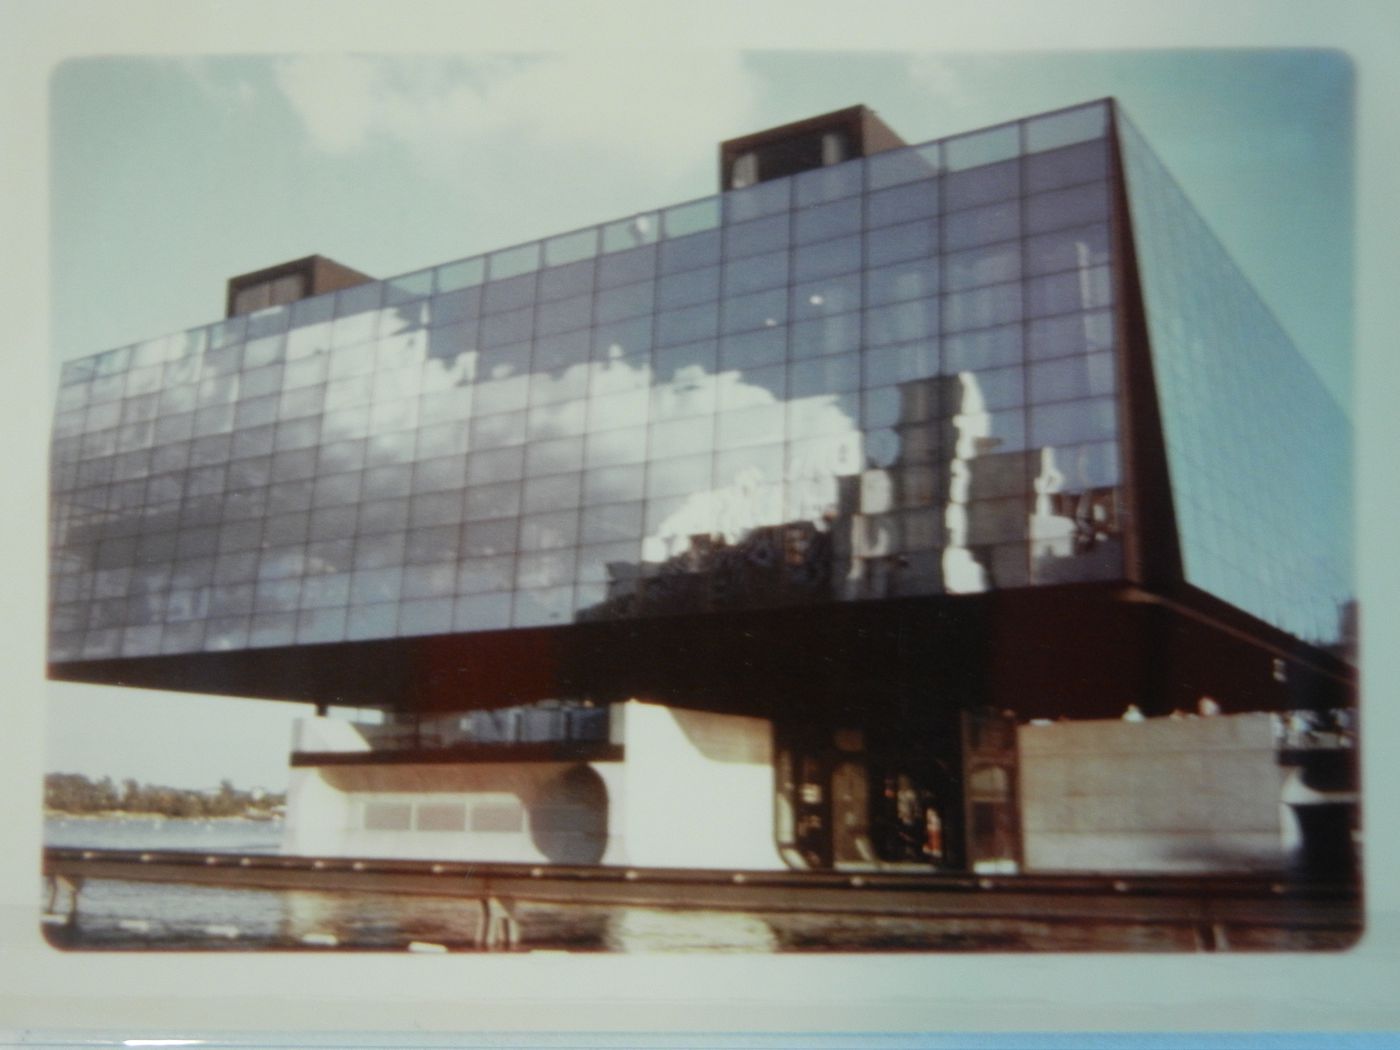 View of the Province of Quebec Pavilion, Expo 67, Montréal, Québec